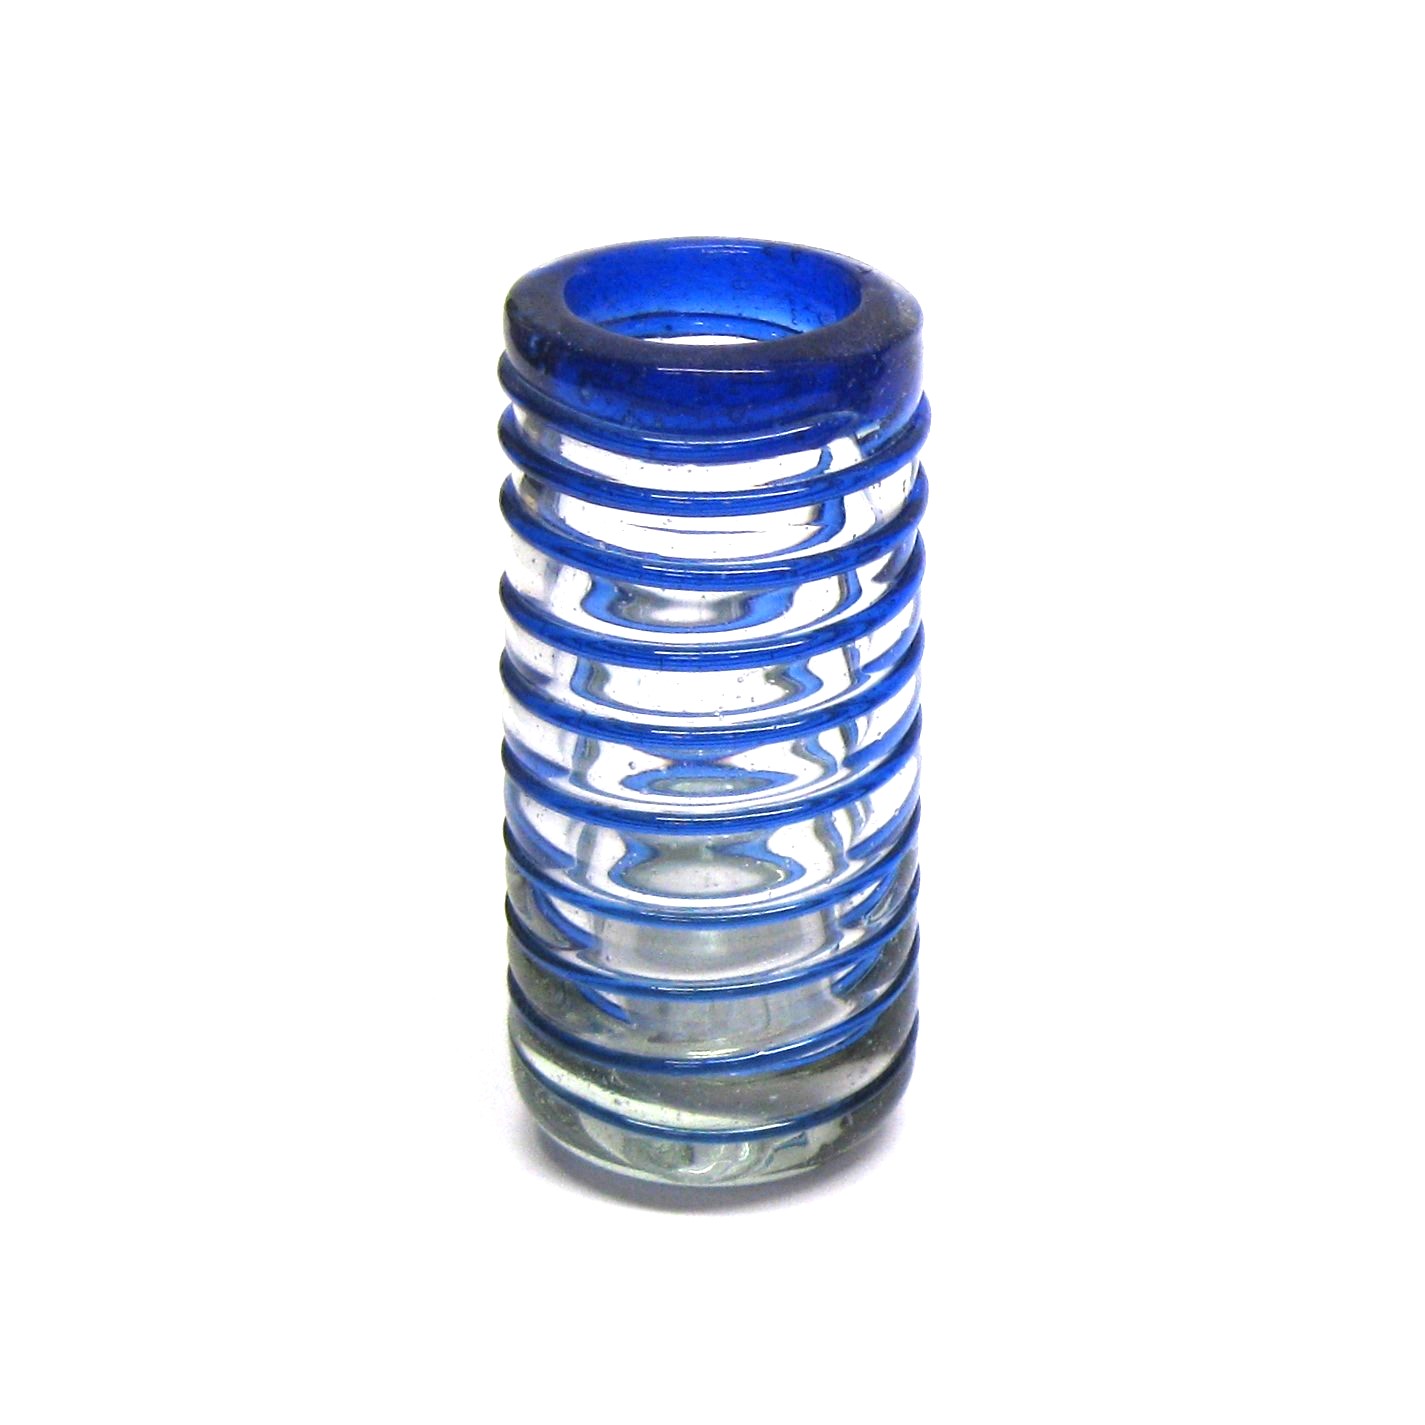 'caballitos' con espiral azul cobalto, 2 oz, Vidrio Reciclado, Libre de Plomo y Toxinas